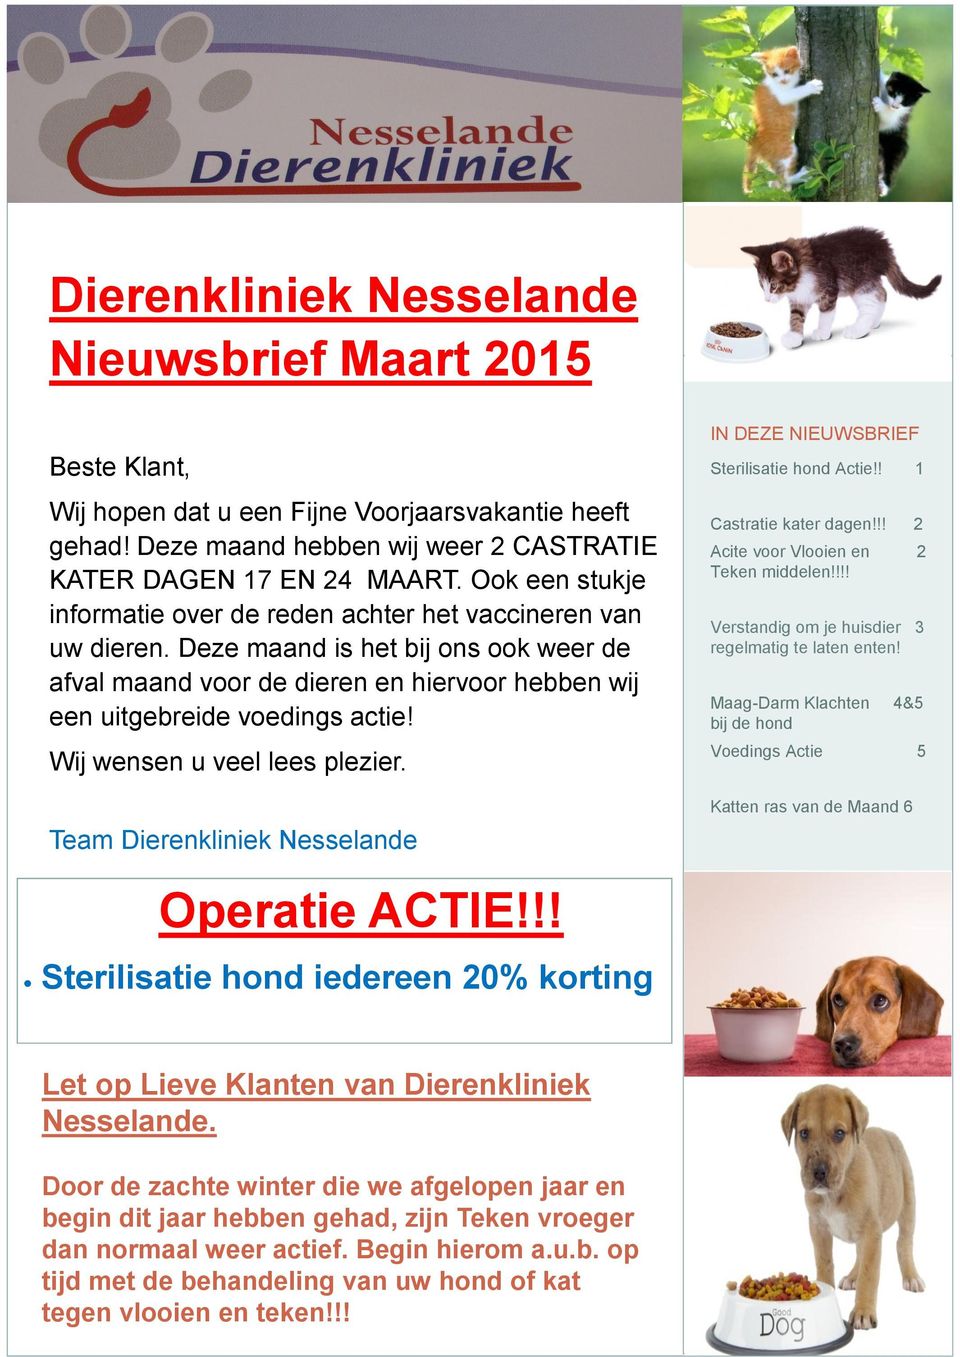 Wij wensen u veel lees plezier. Team Dierenkliniek Nesselande IN DEZE NIEUWSBRIEF Sterilisatie hond Actie!! 1 Castratie kater dagen!!! 2 Acite voor Vlooien en 2 Teken middelen!